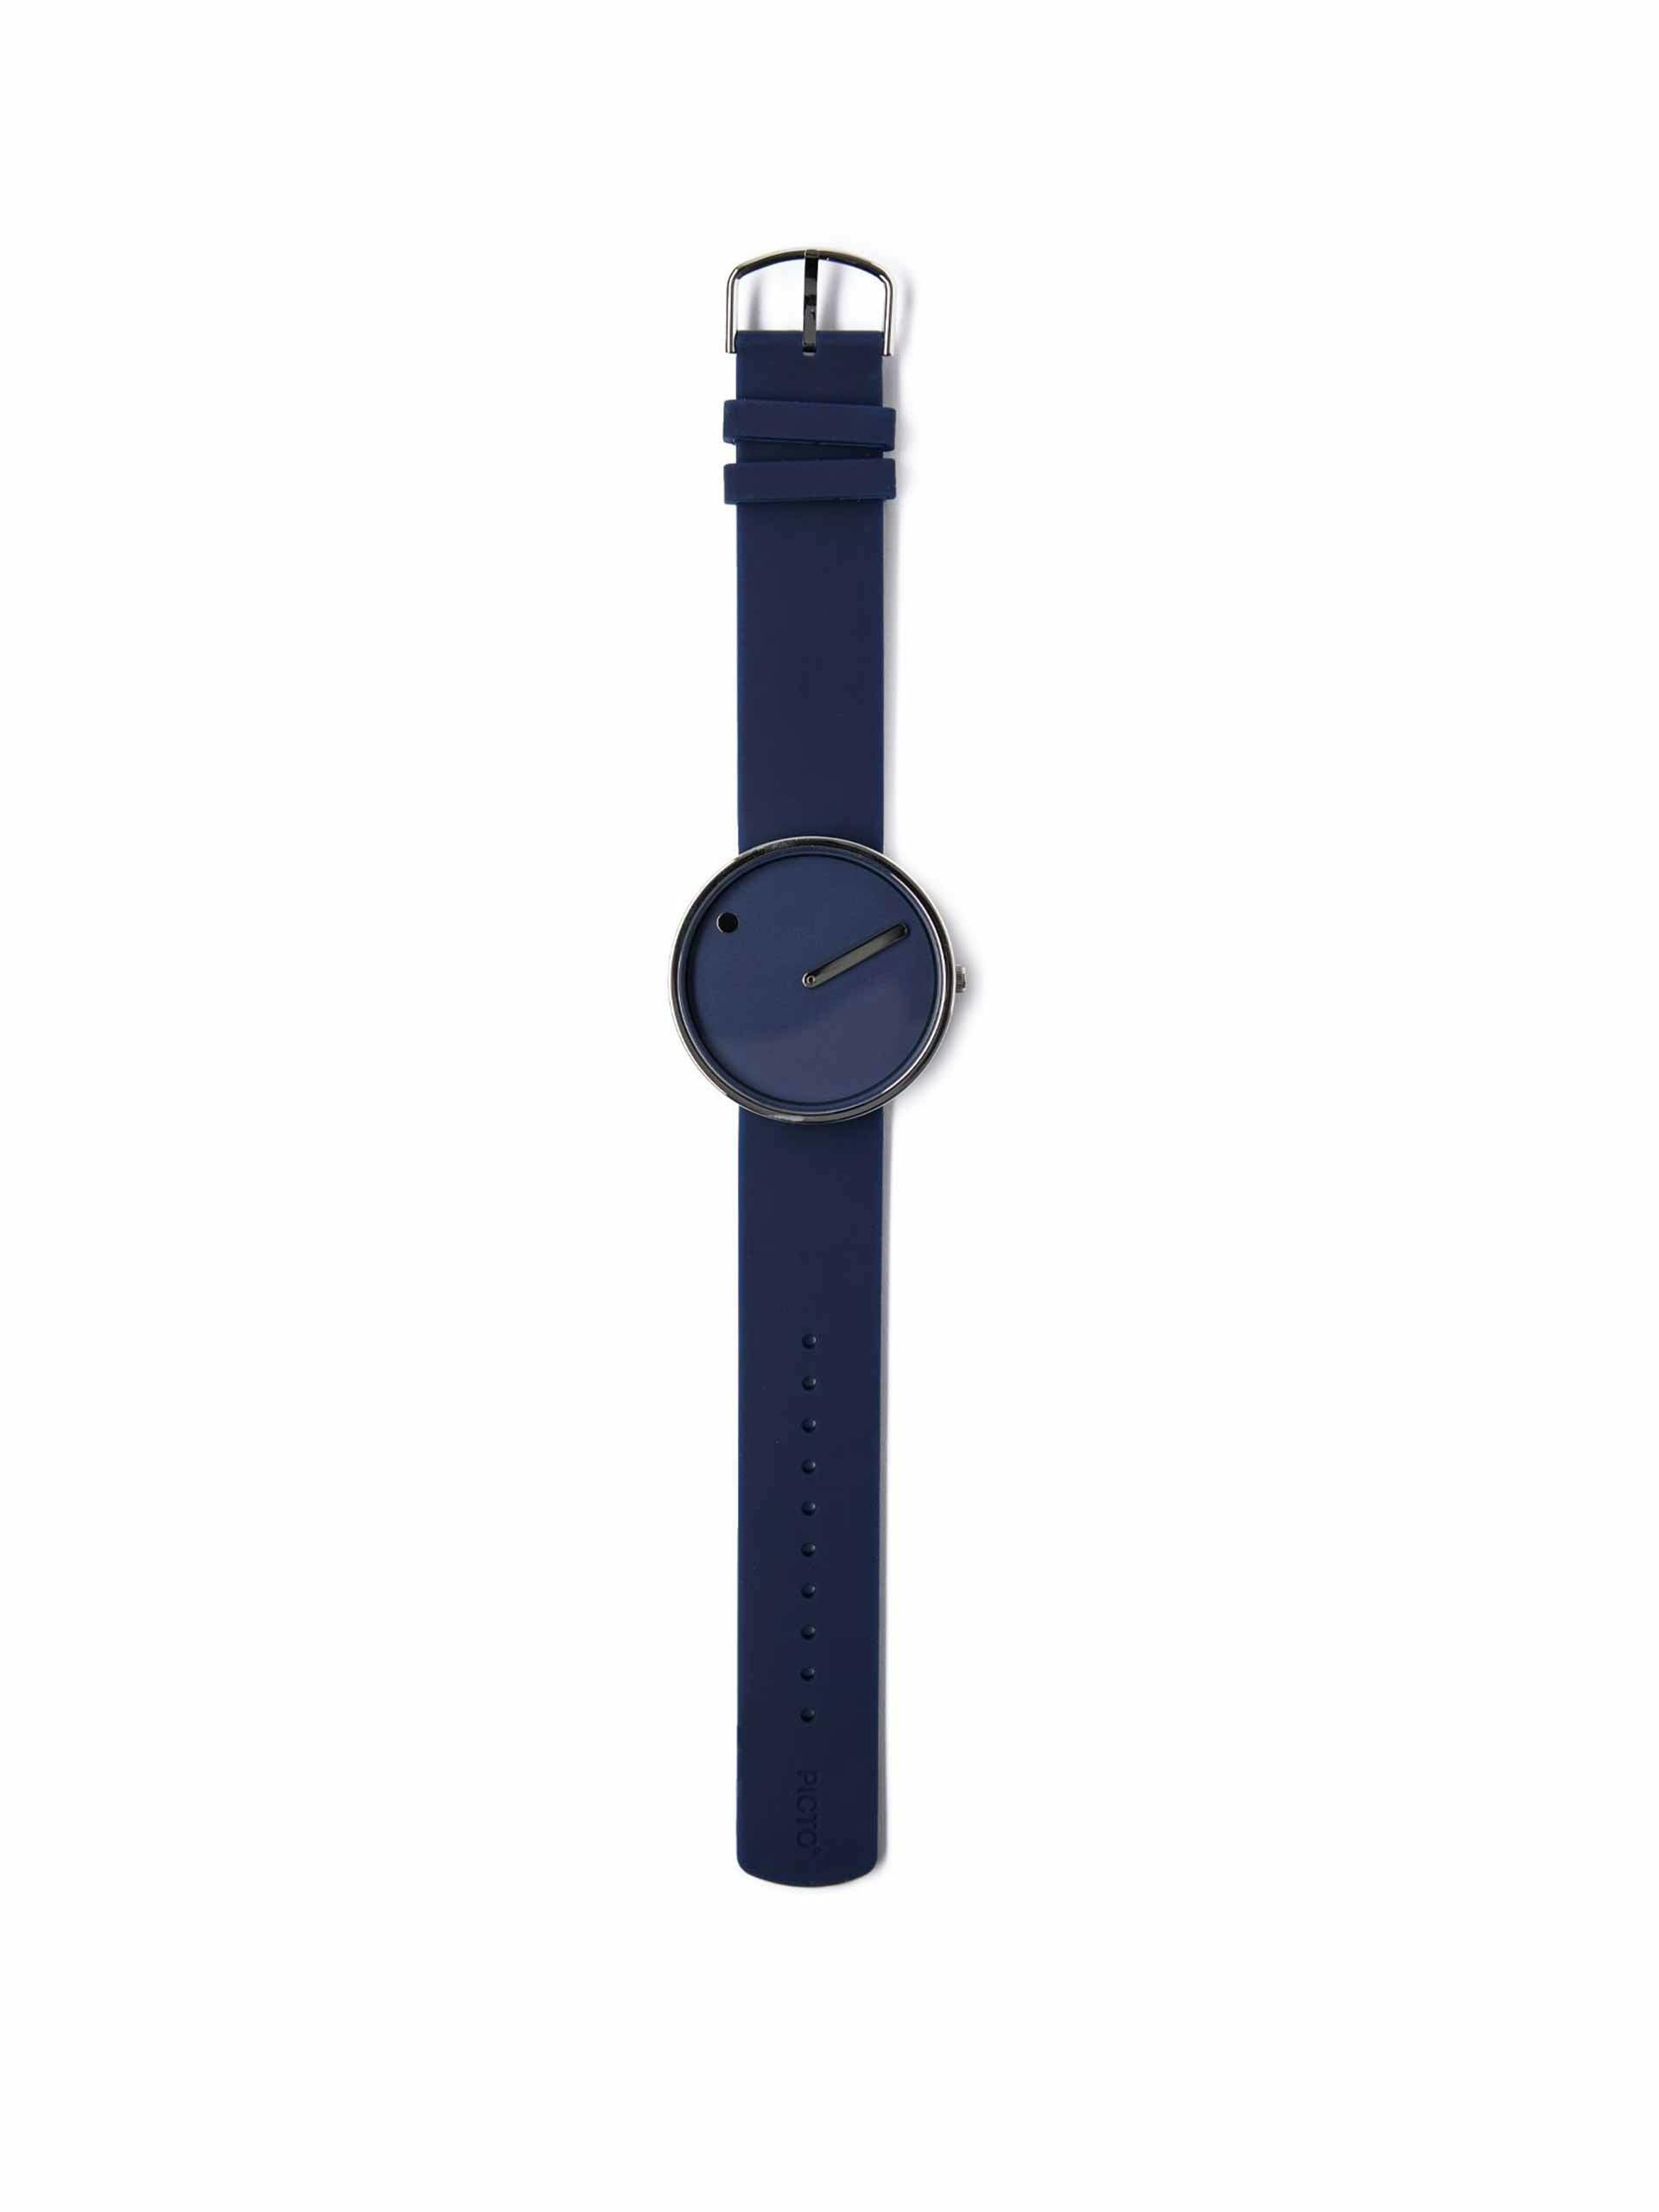 Midnight blue watch